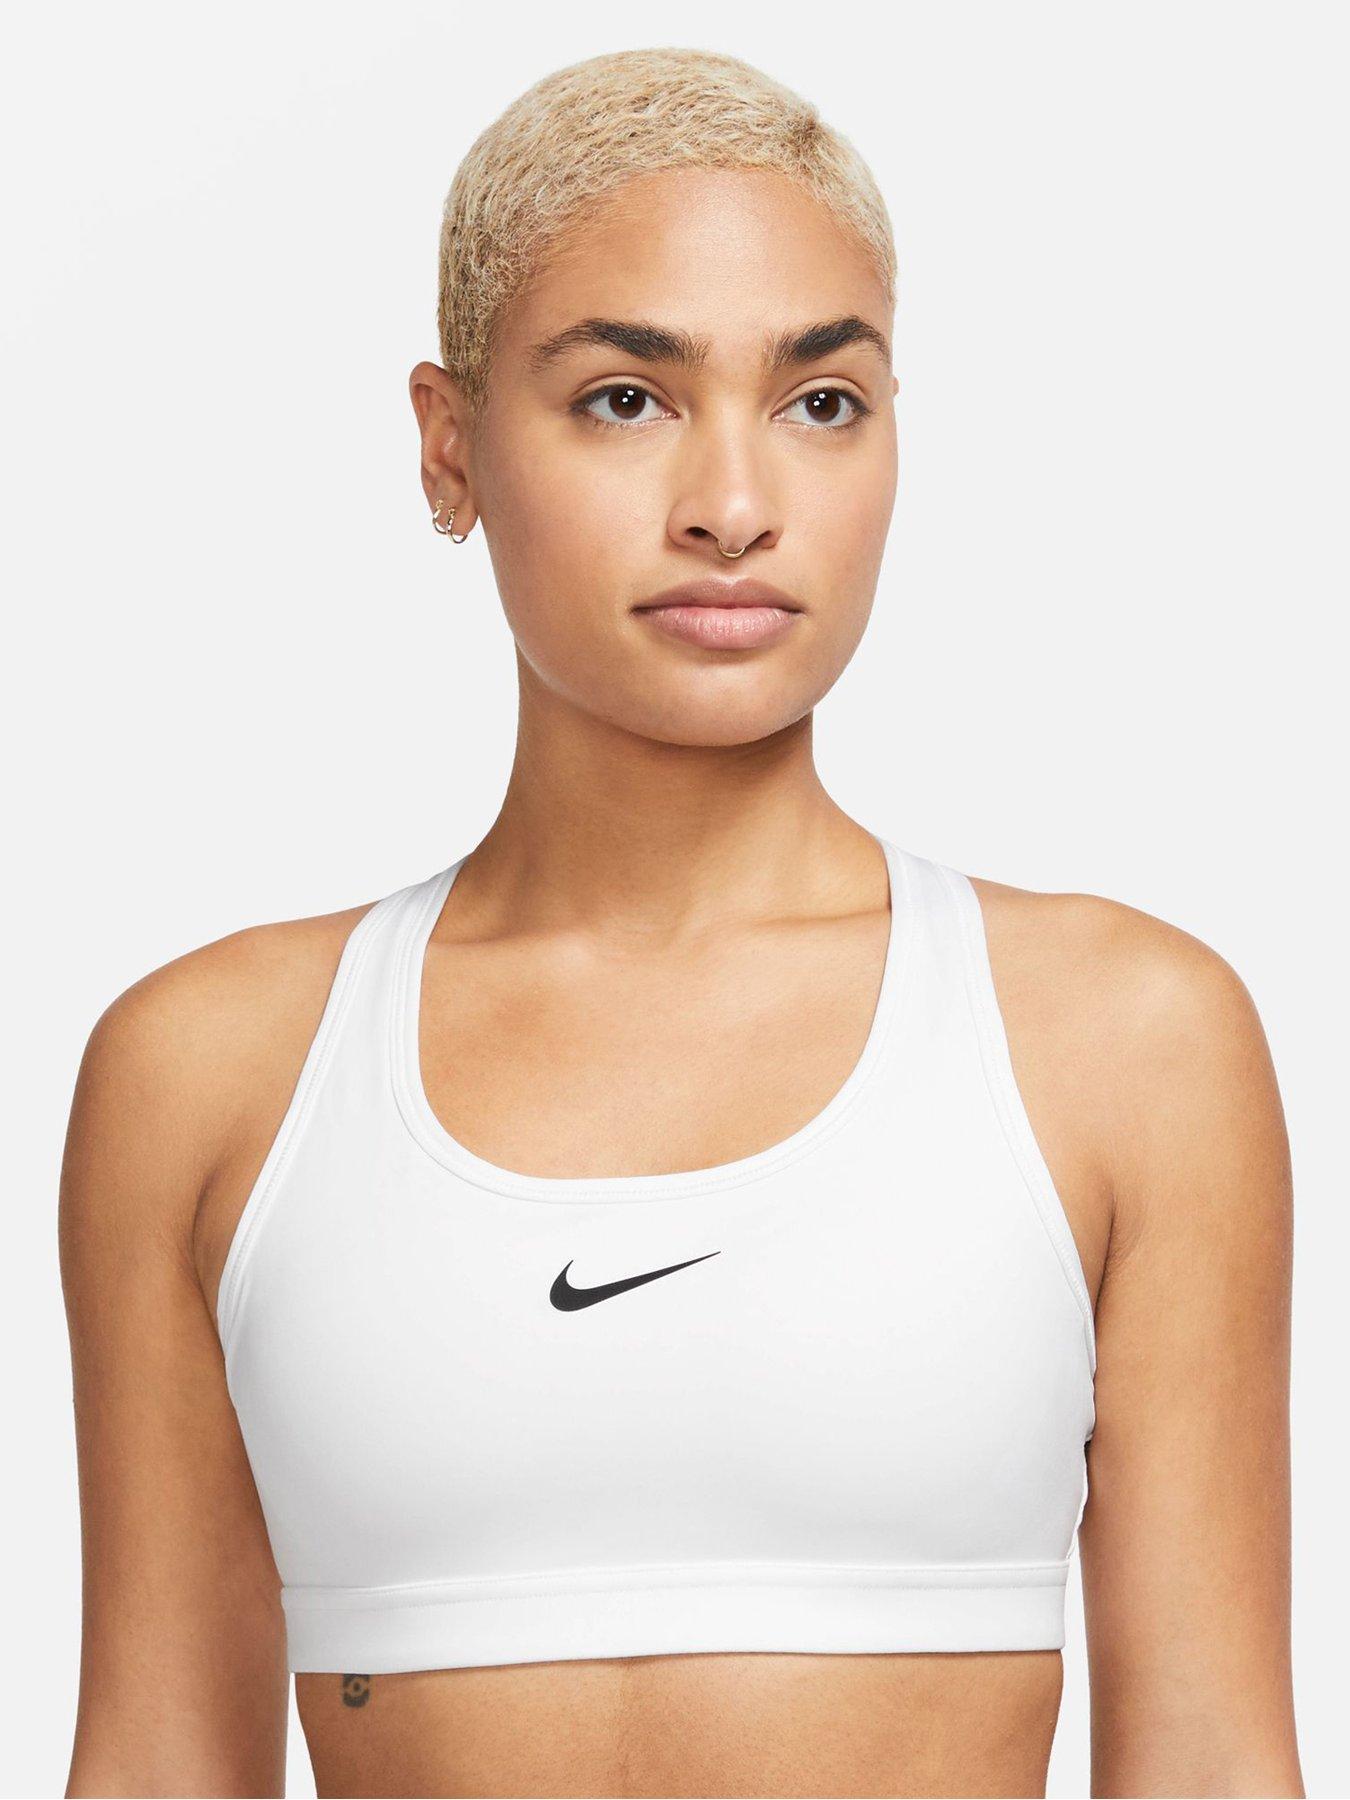 Nike Women's Dri Fit Medium Support Sports Bra Purple Size 1X